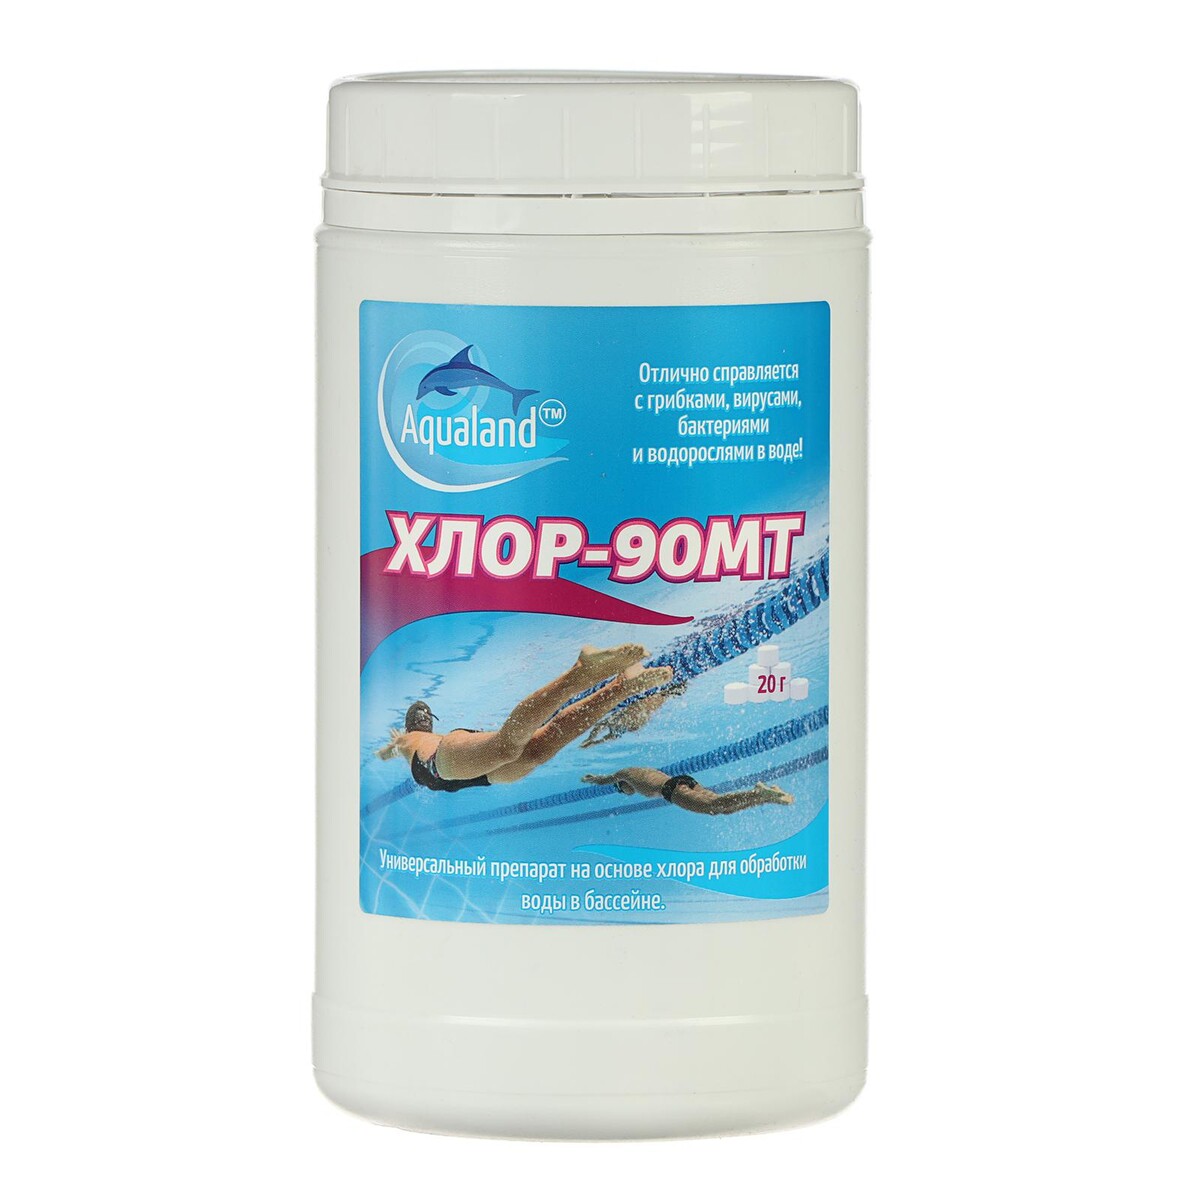 Дезинфицирующие средство aqualand хлор-90мт, таблетки 20 г, 1 кг поплавок дозатор aqualand многоразовый